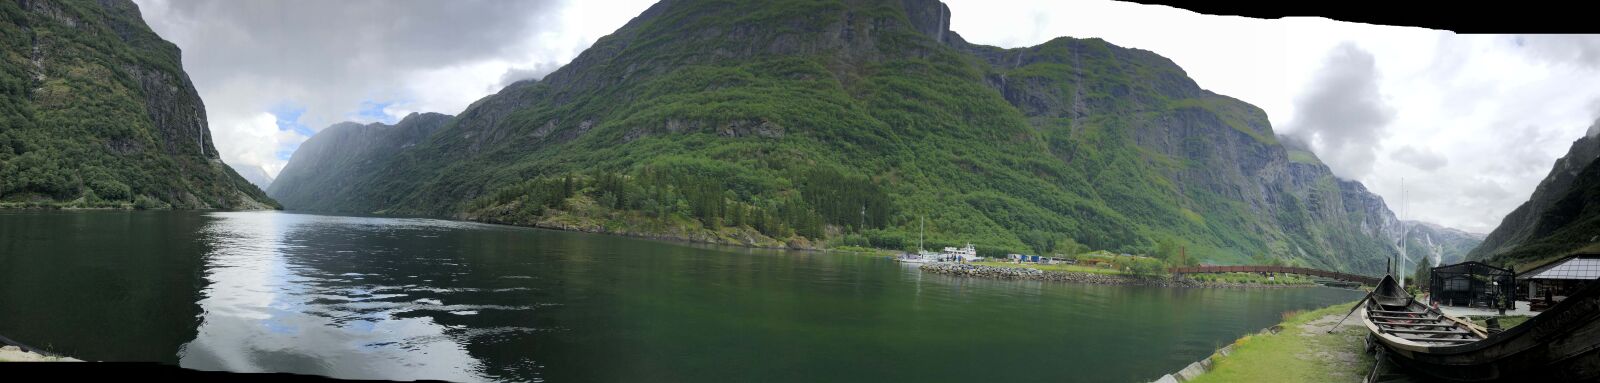 Apple iPhone X sample photo. Boat, boathouse, lakeside, panorama photography